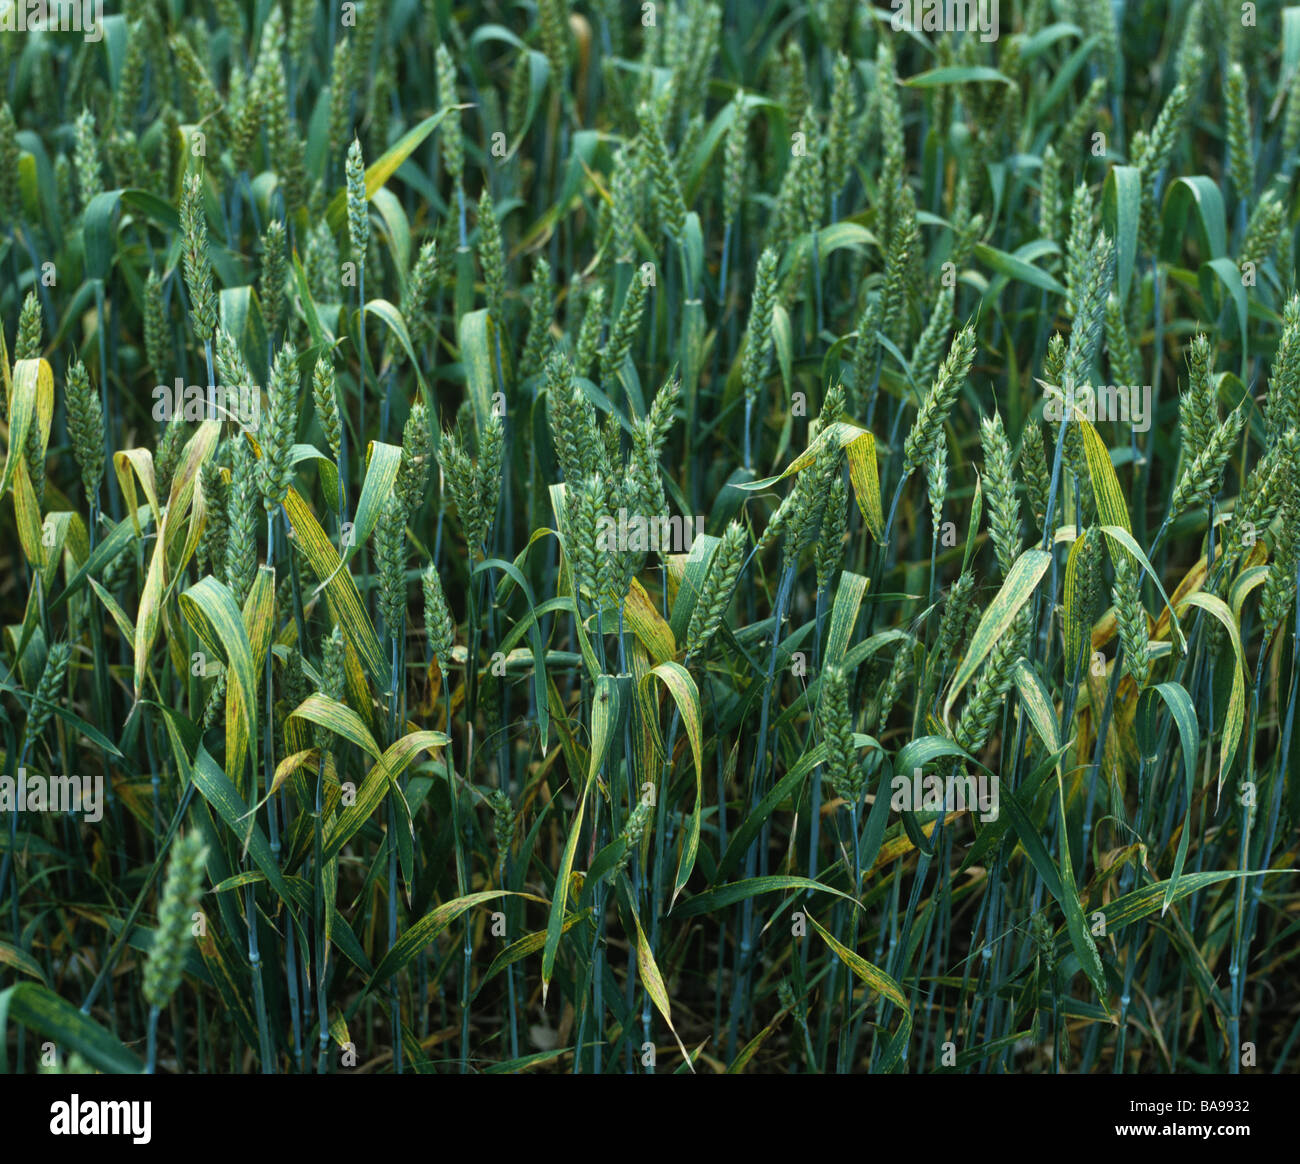 Los síntomas de la deficiencia de magnesio de la flagleaves de un cultivo de trigo en espiga Foto de stock